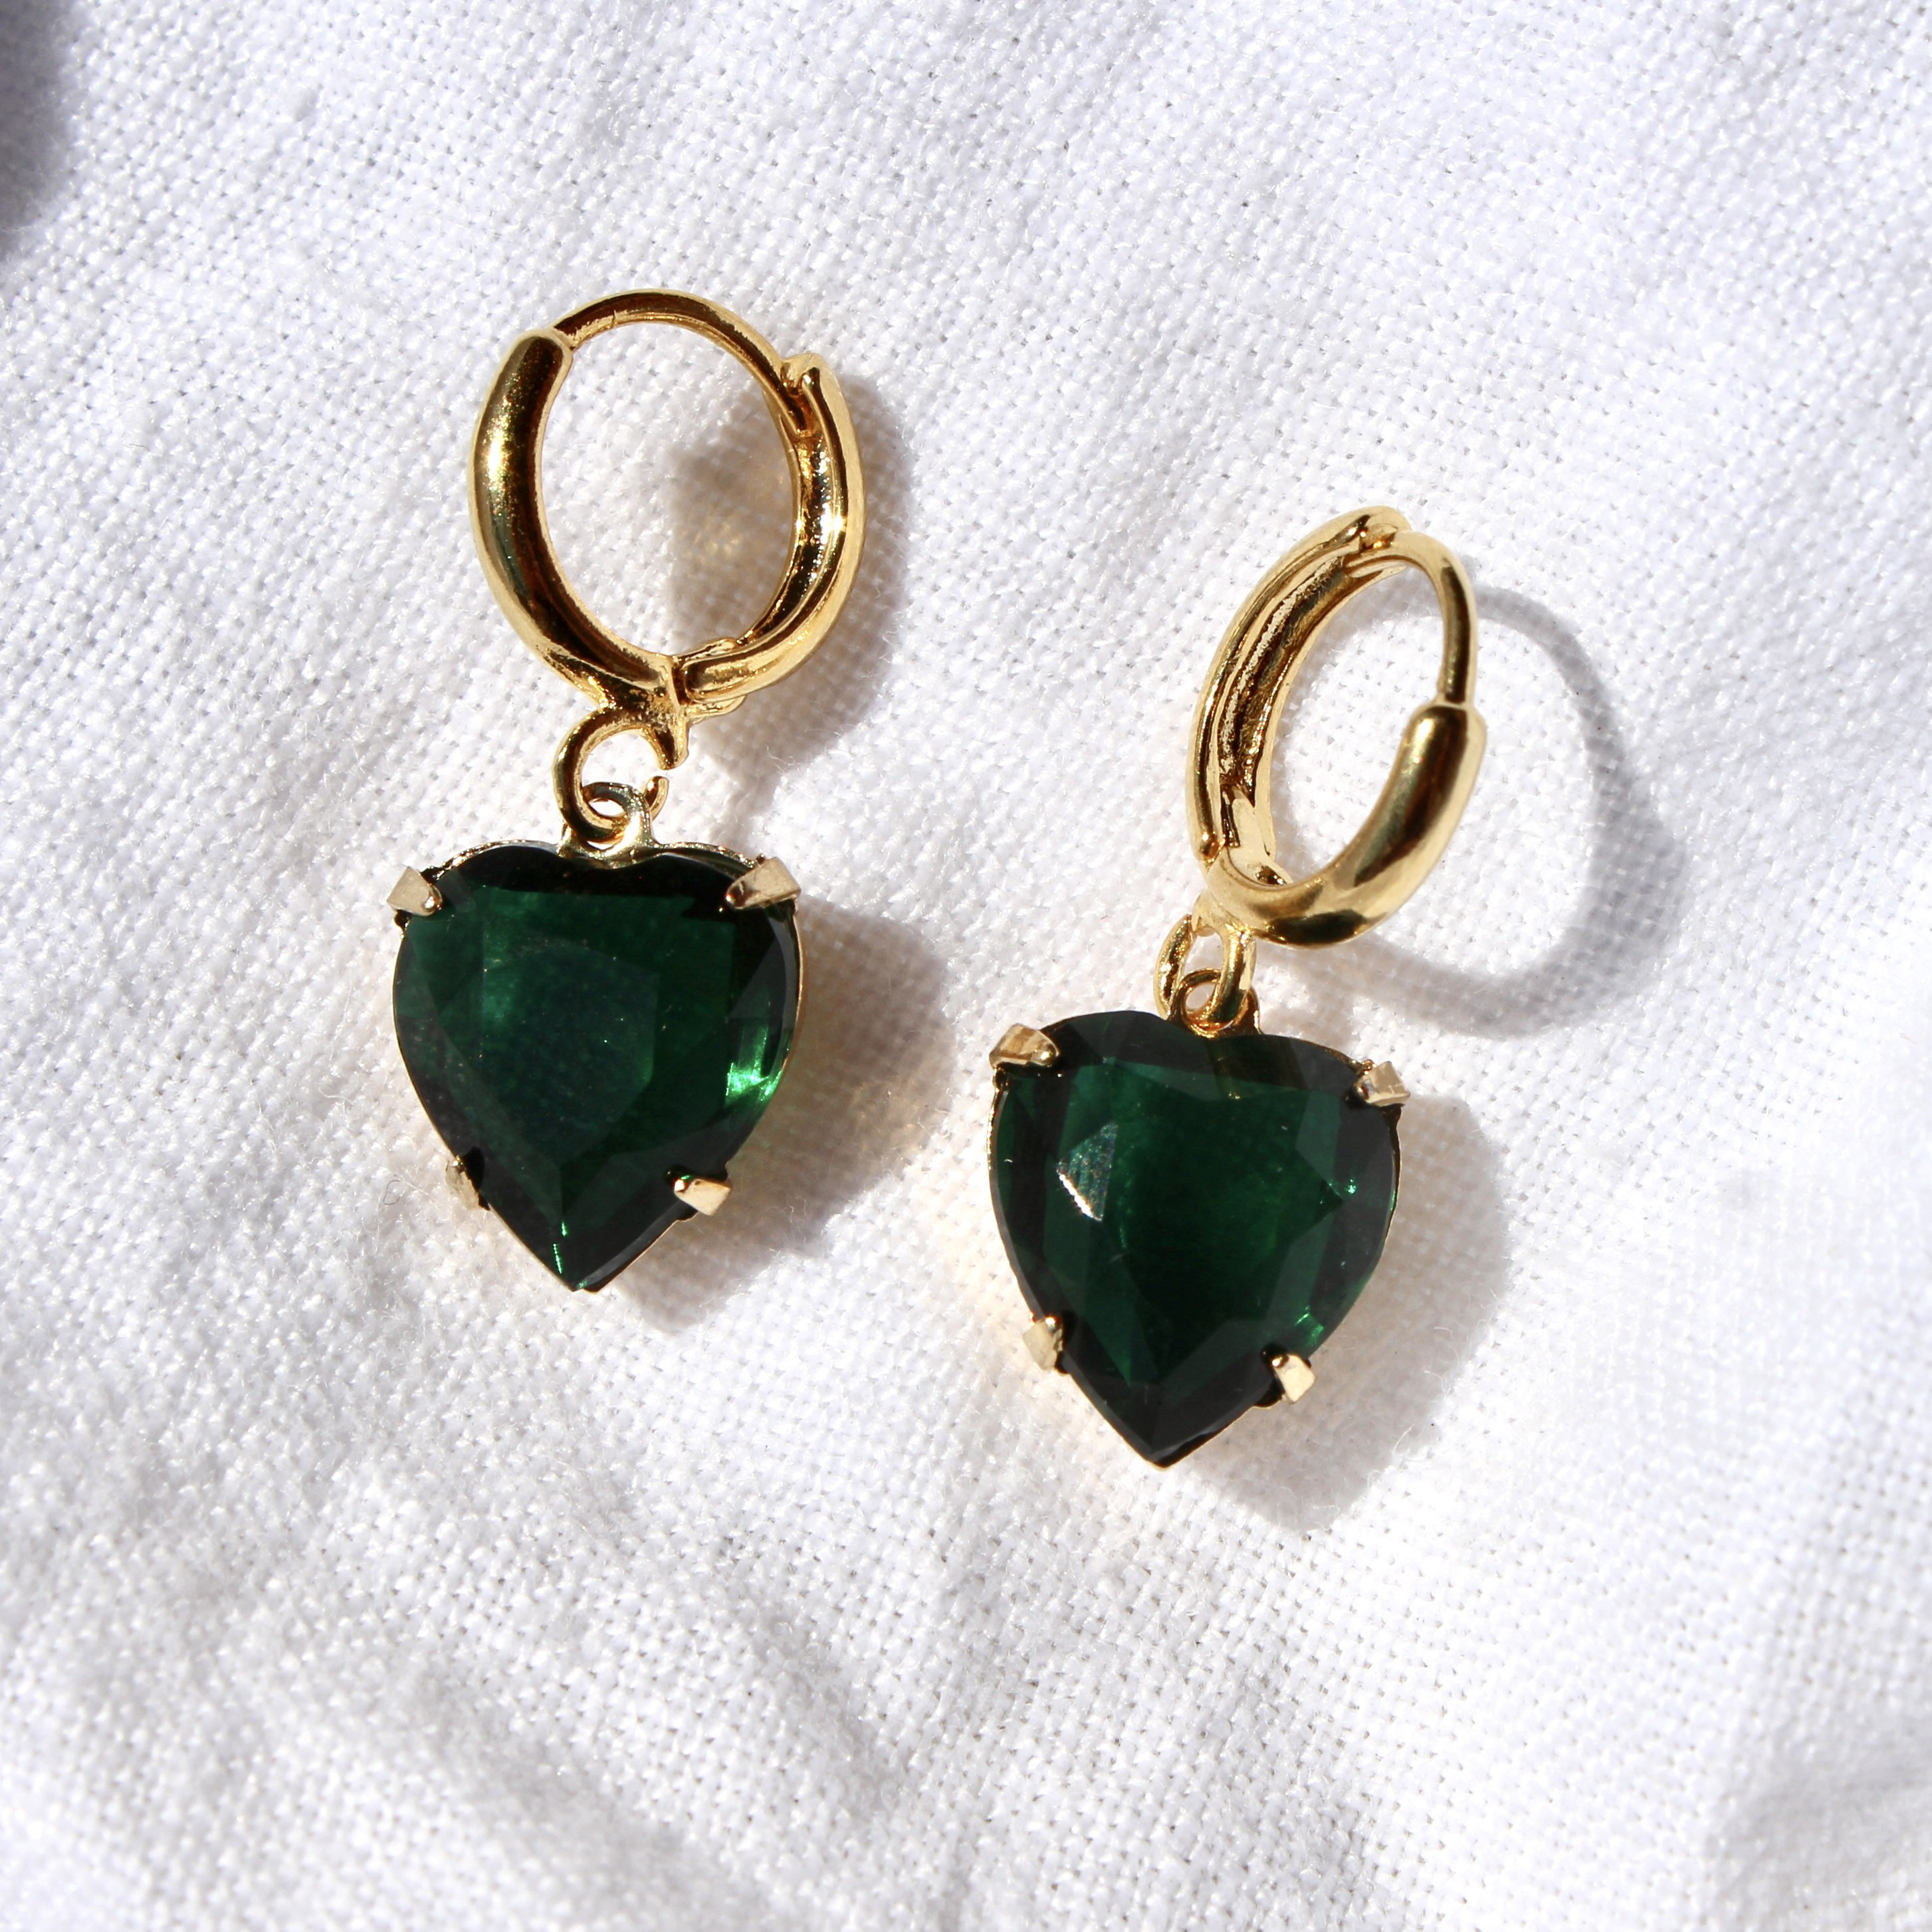 Emerald Stud Earrings in 9ct Gold | Ruby & Oscar